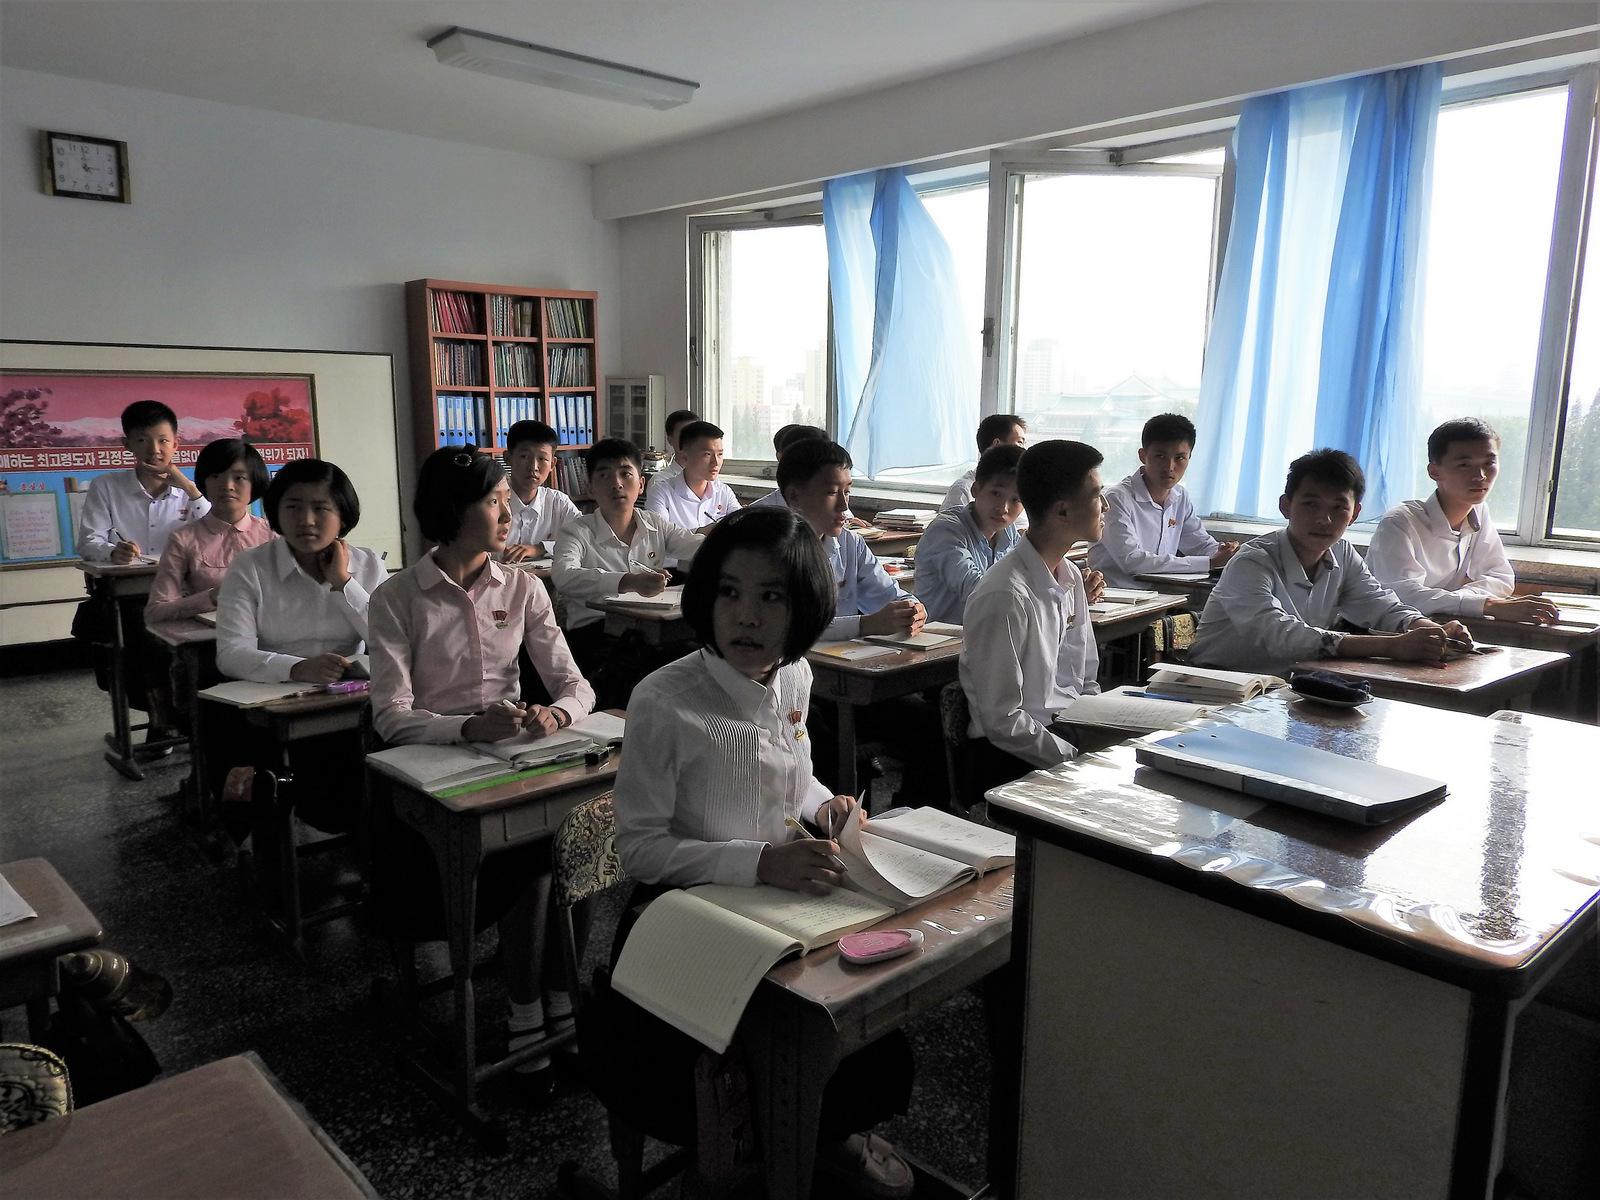 Μαθητές γυμνασίου σε σχολείο της πρωτεύουσας. Οι βορειοκορεάτες μαθητές μίλησαν για την ανάγκη να υπάρξει ειρήνη και να πάψουν οι απειλές ενάντια στη χώρα τους